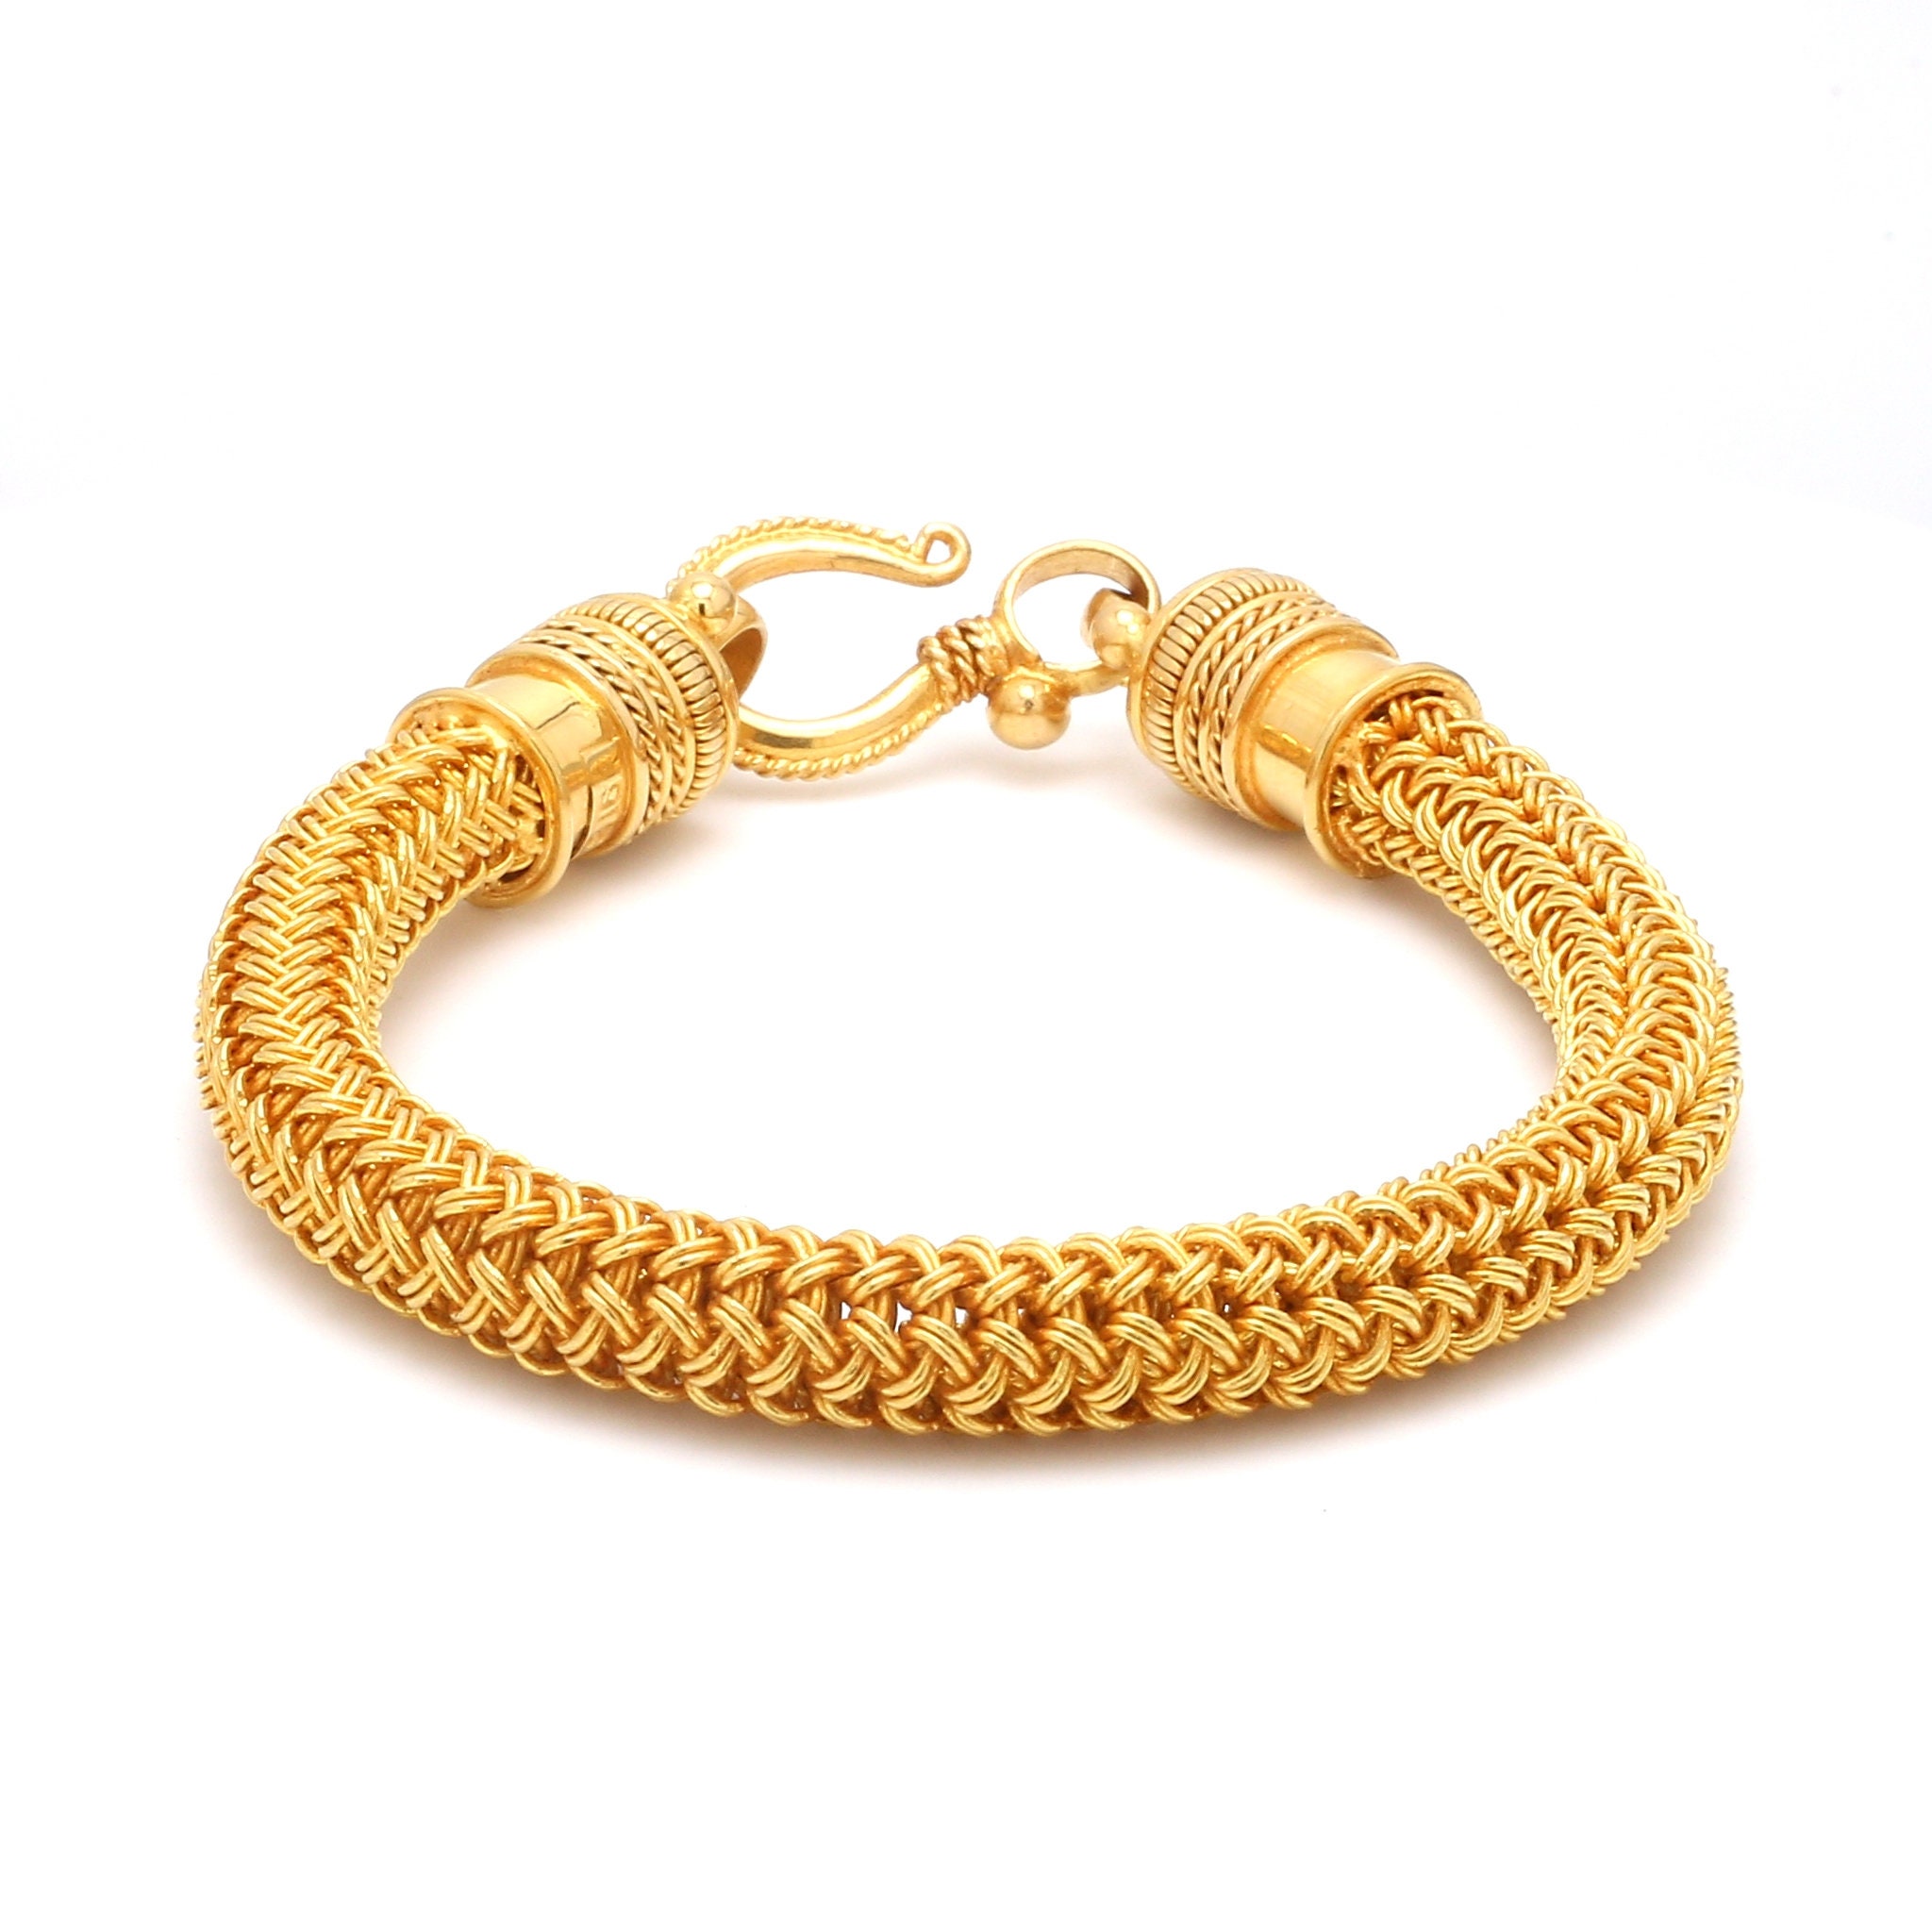 Solid Gold Bracelet Men - Etsy